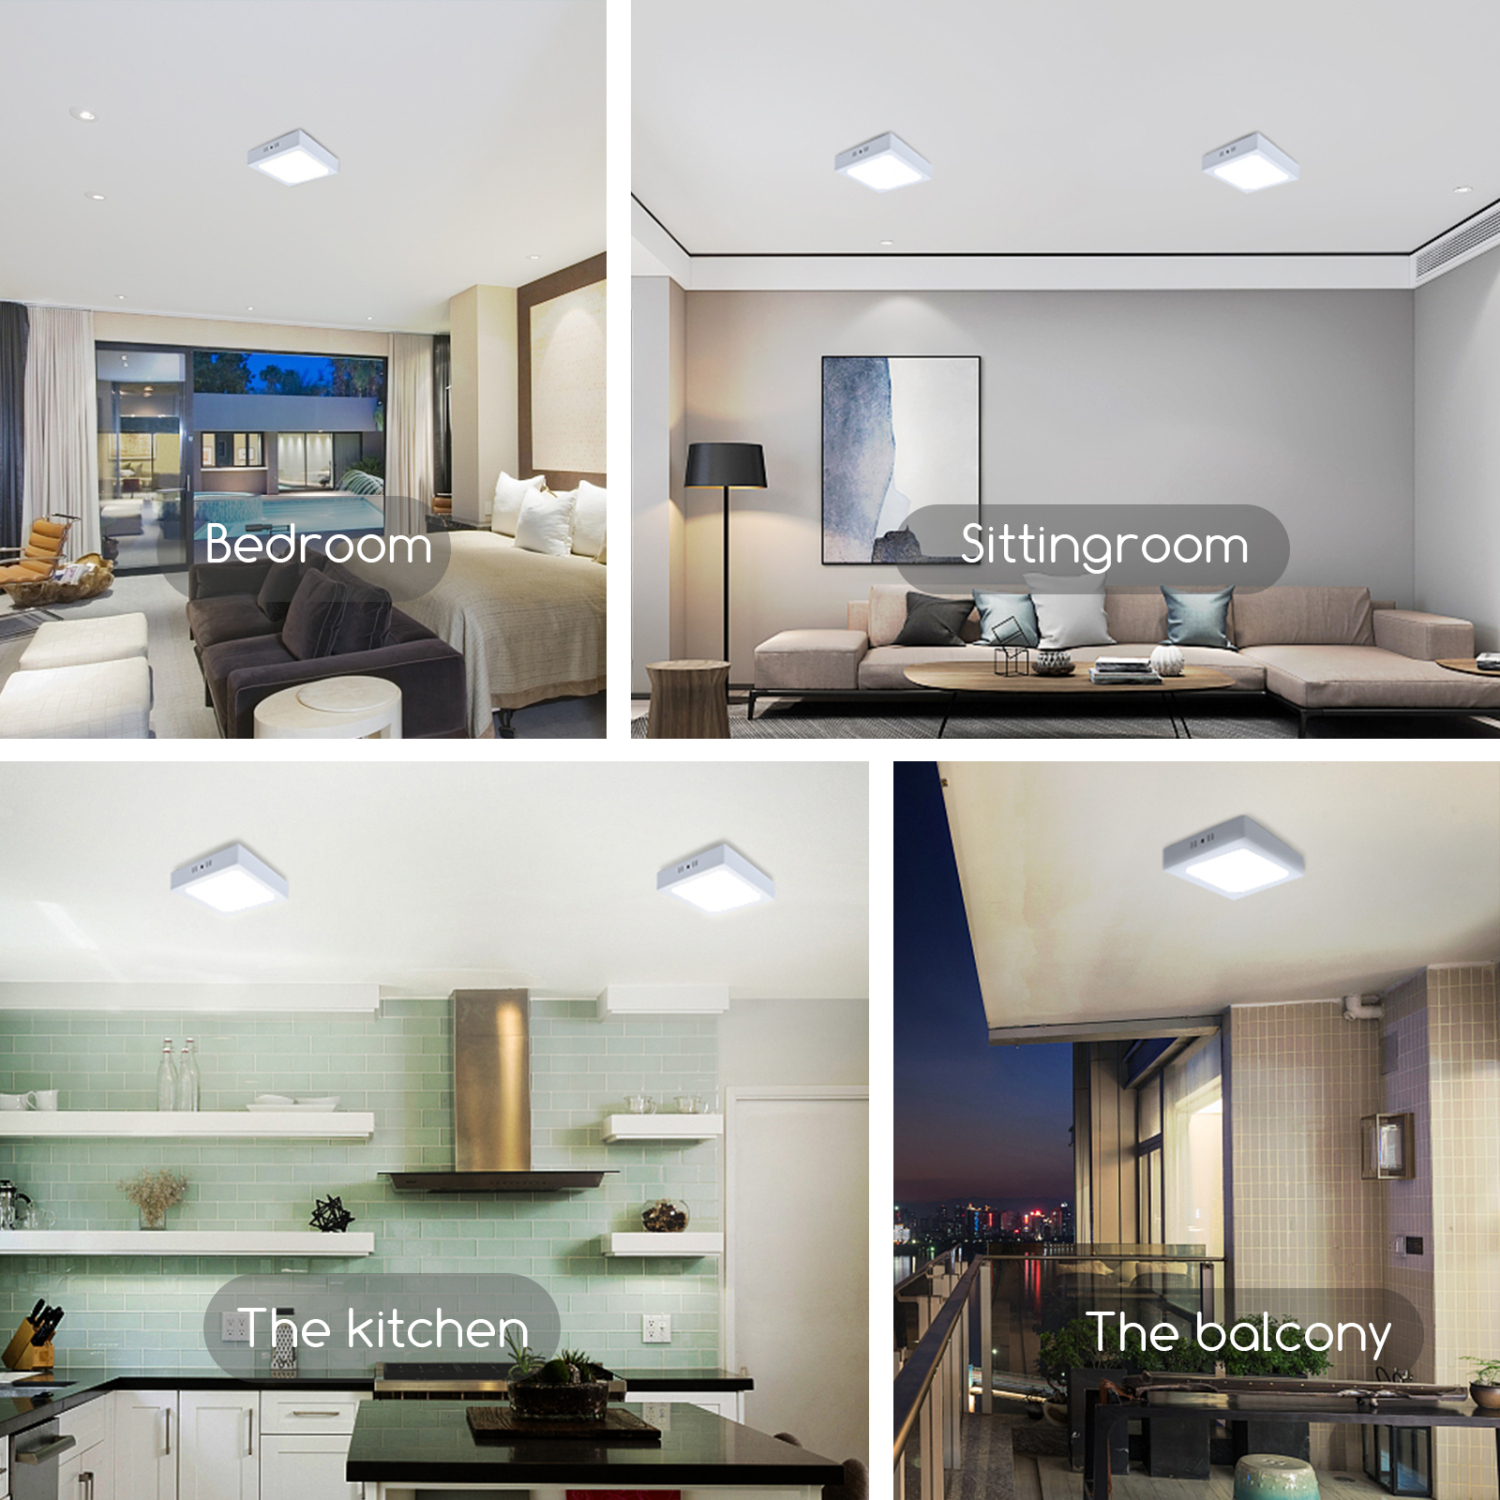 Aigostar Deckenlampe LED, 12W entspricht 120W, 6500K, 960LM Deckenleuchte für Wohnzimmer, Schlafzimmer, Küche, Flur, Balkon, Esszimmer, 200-240V Kein Trafo erforderlich [Energieklasse A+]